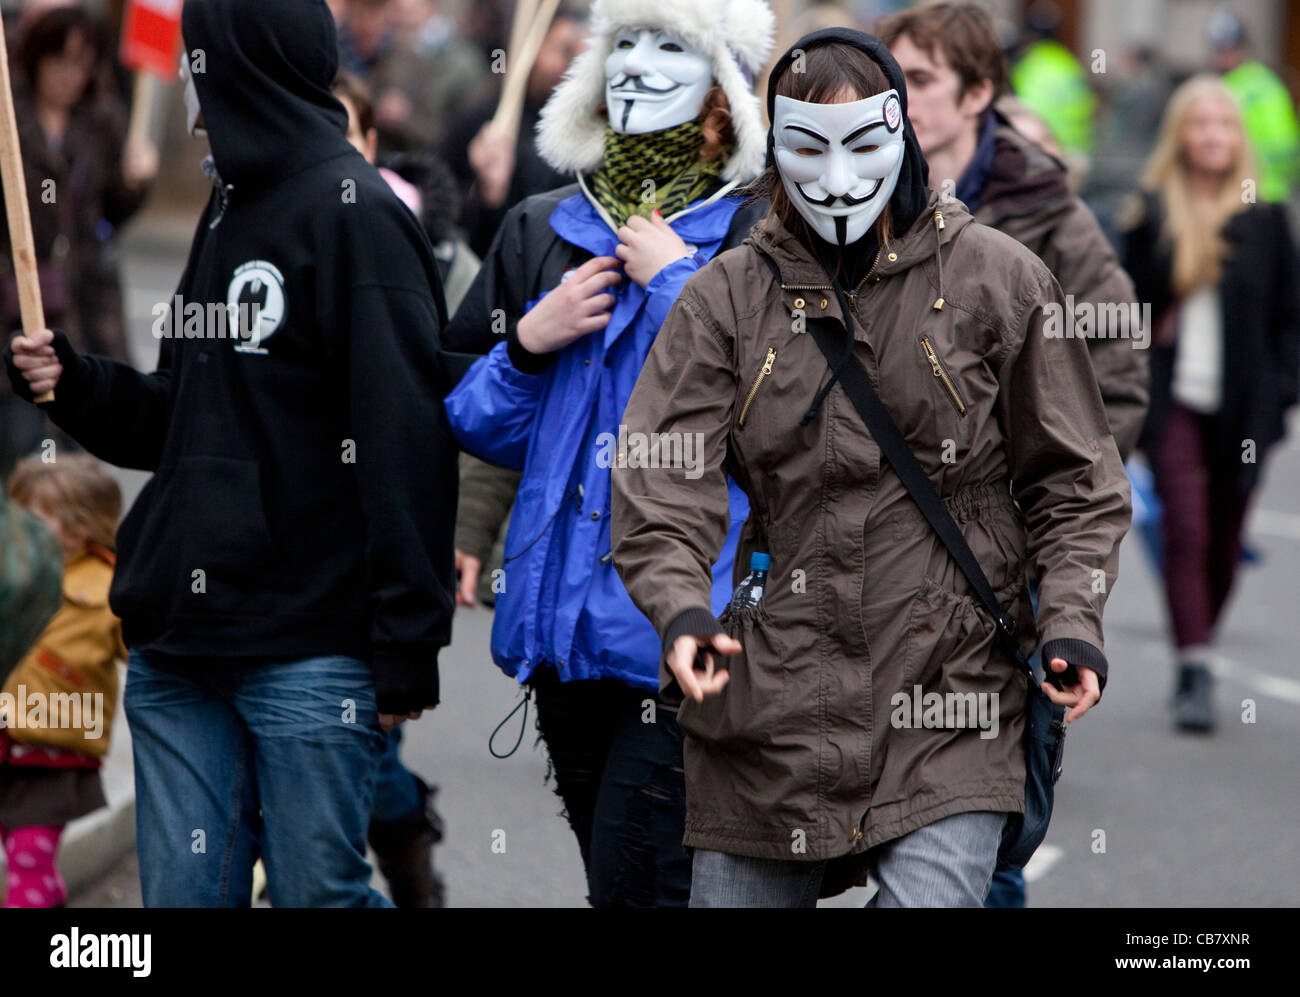 Grève du secteur public (les syndicats) manifestants portant des V pour Vendetta, les masques de Guy Fawkes, Londres, Angleterre, RU, 2011 Banque D'Images